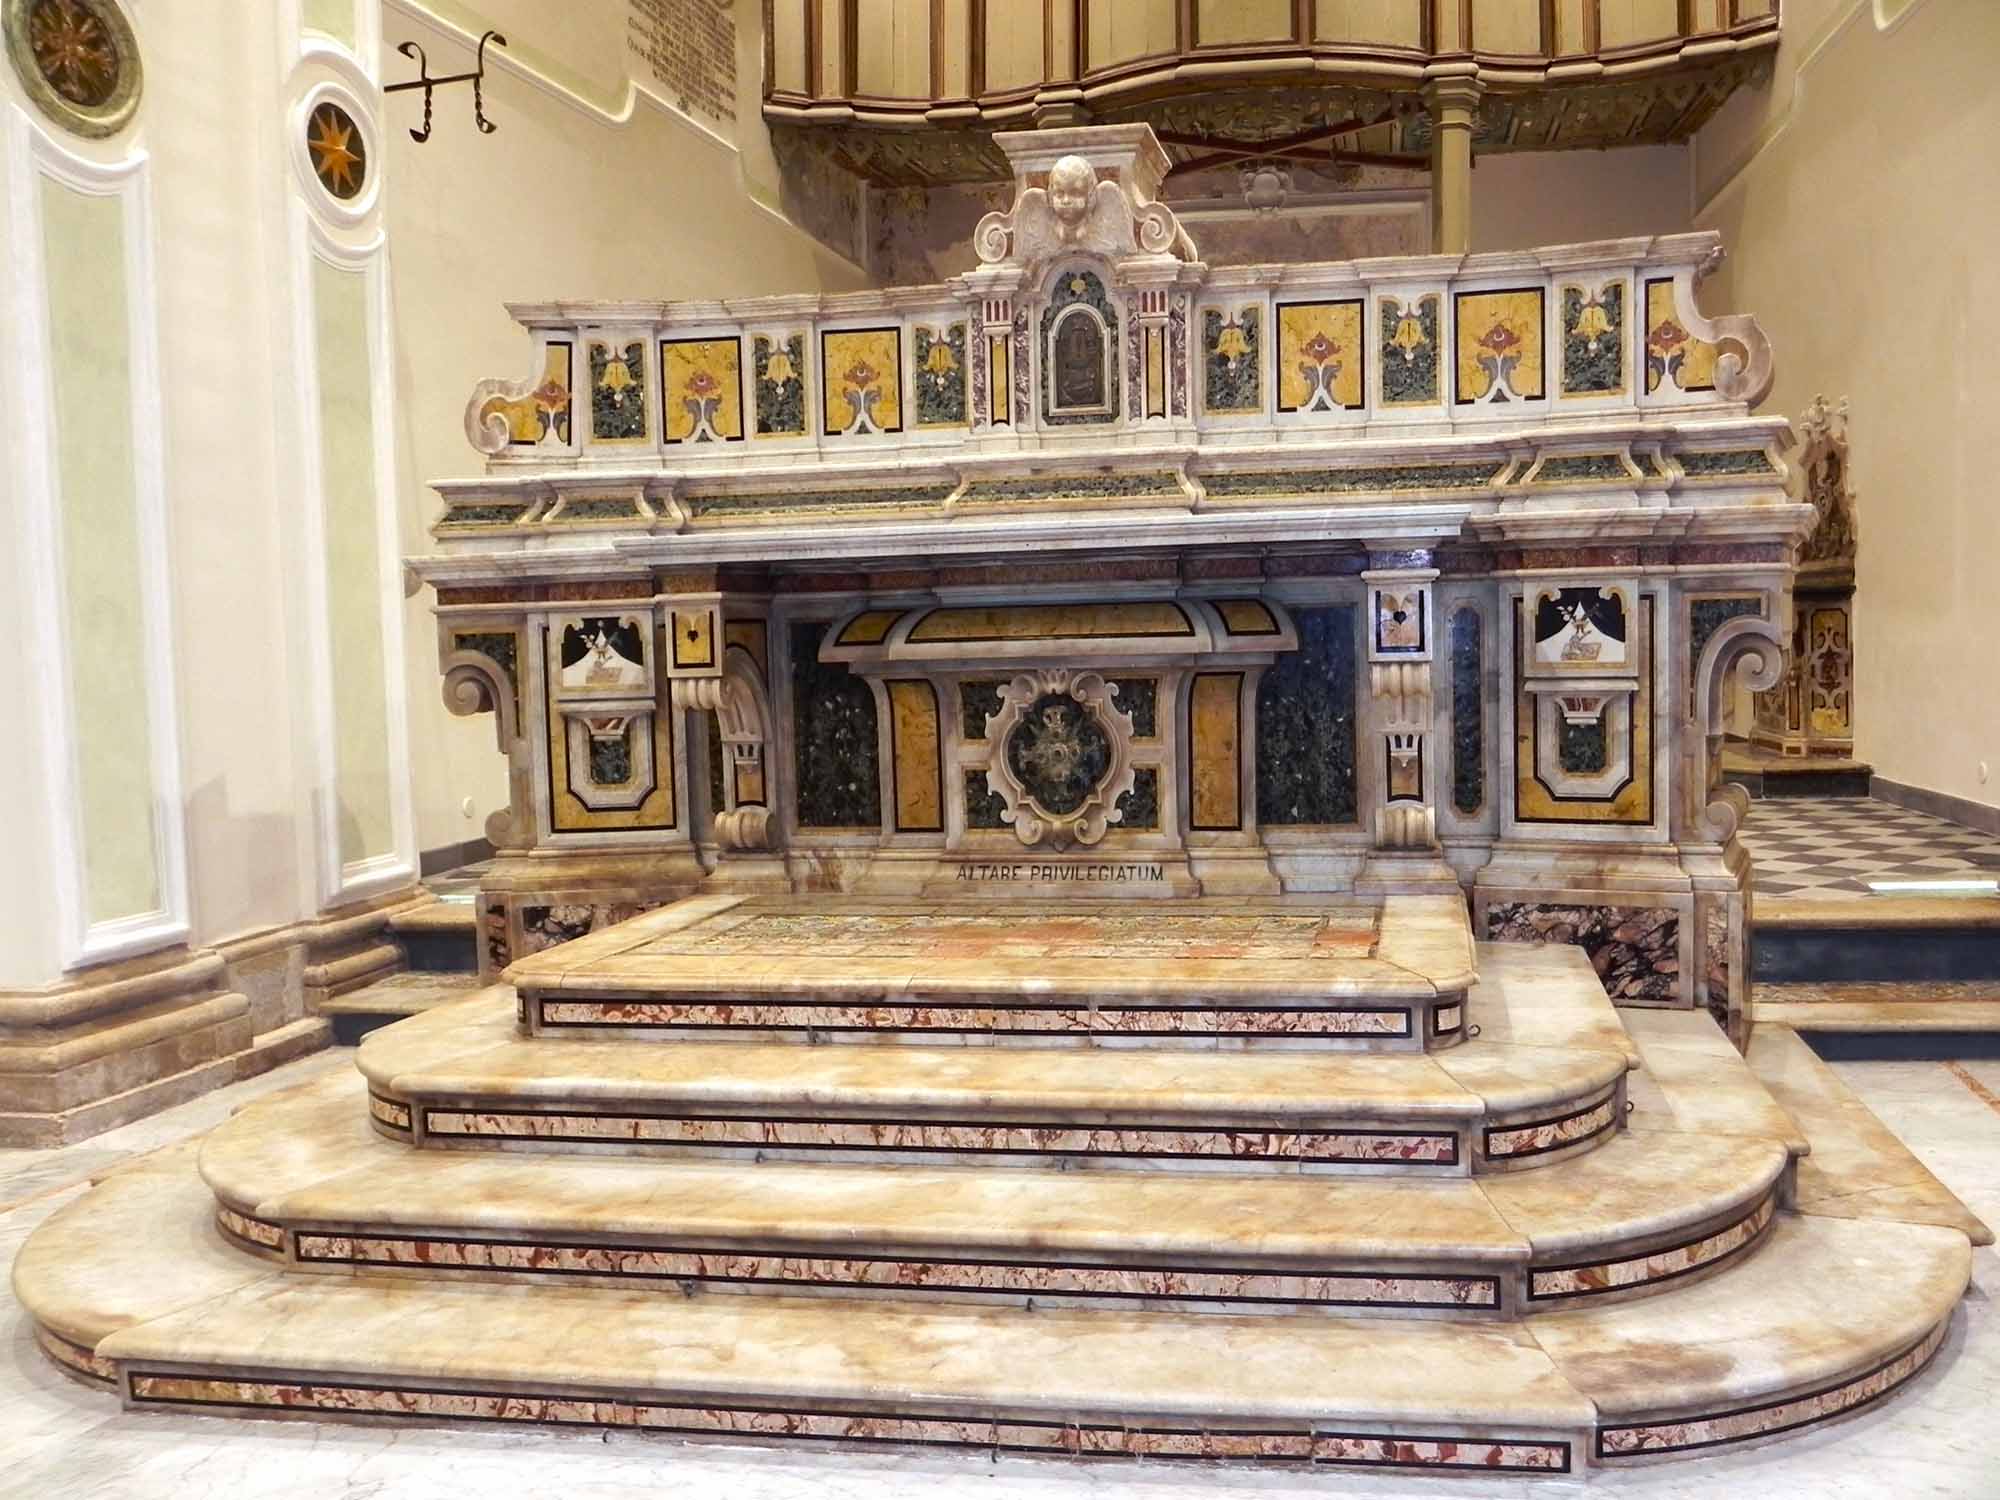 l'altare maggiore ripreso da altra angolazione